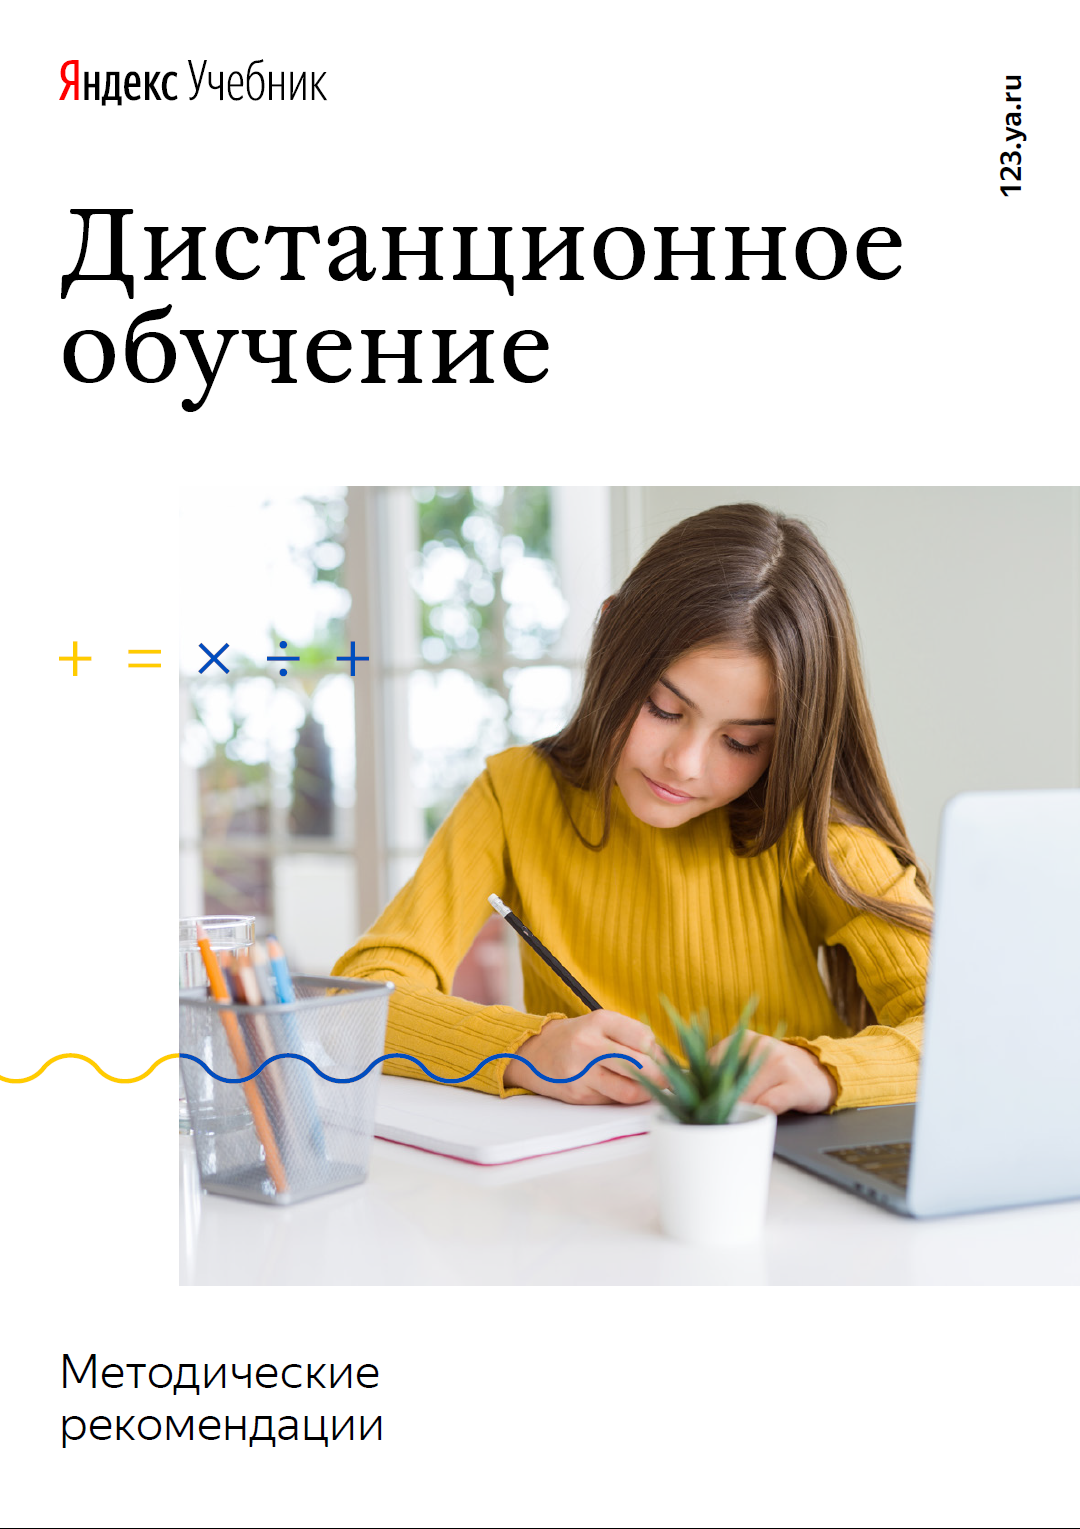 Дистанционное обучение с Яндекс учебником